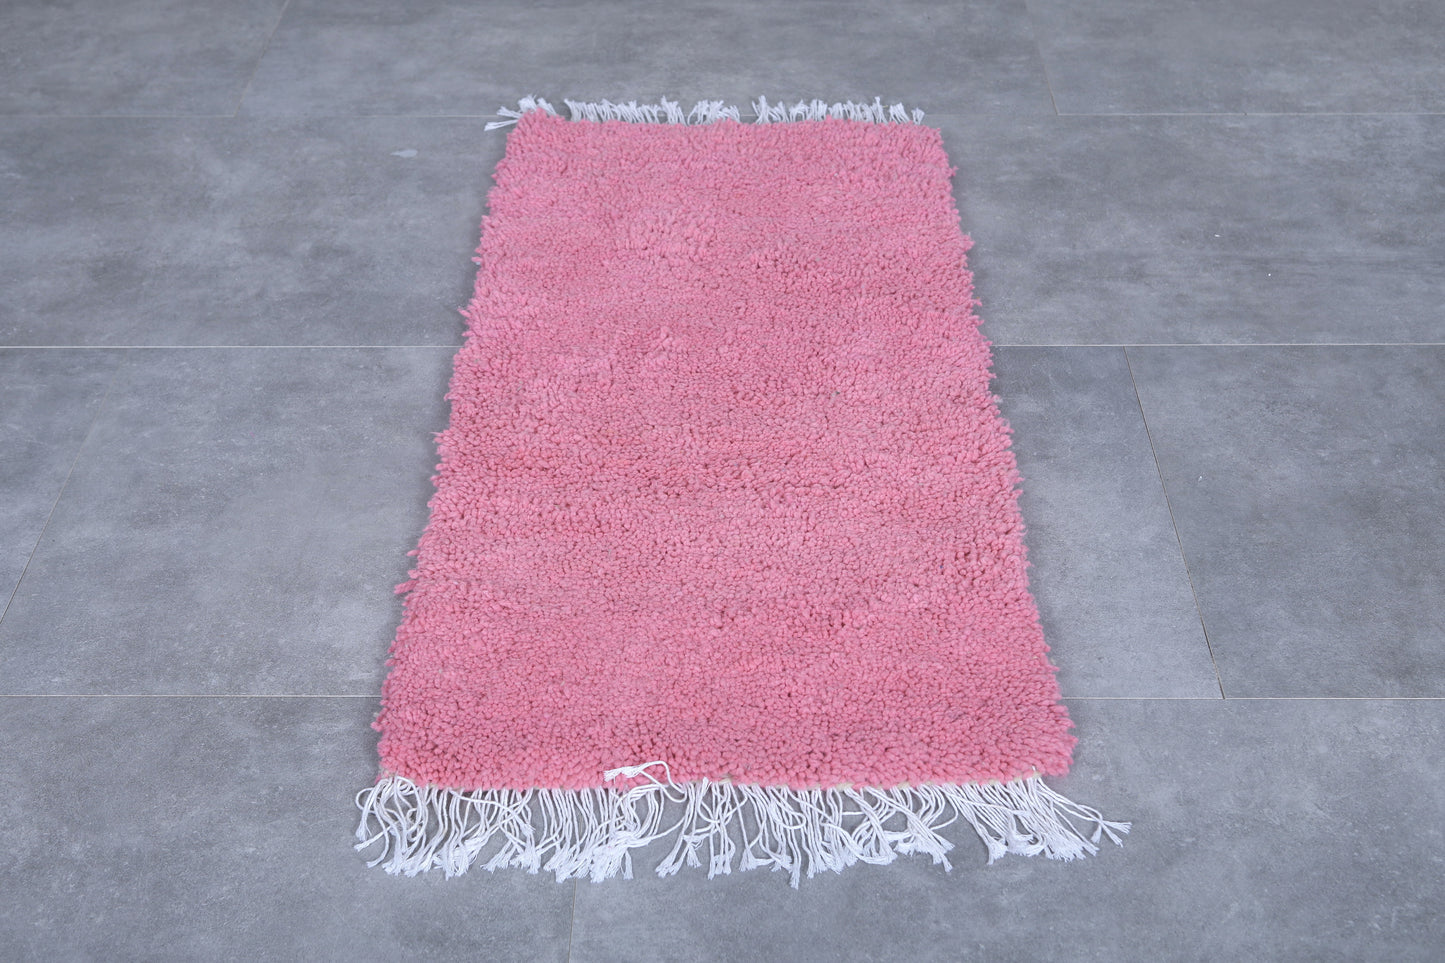 Moroccan rug 2 X 4.1 Feet